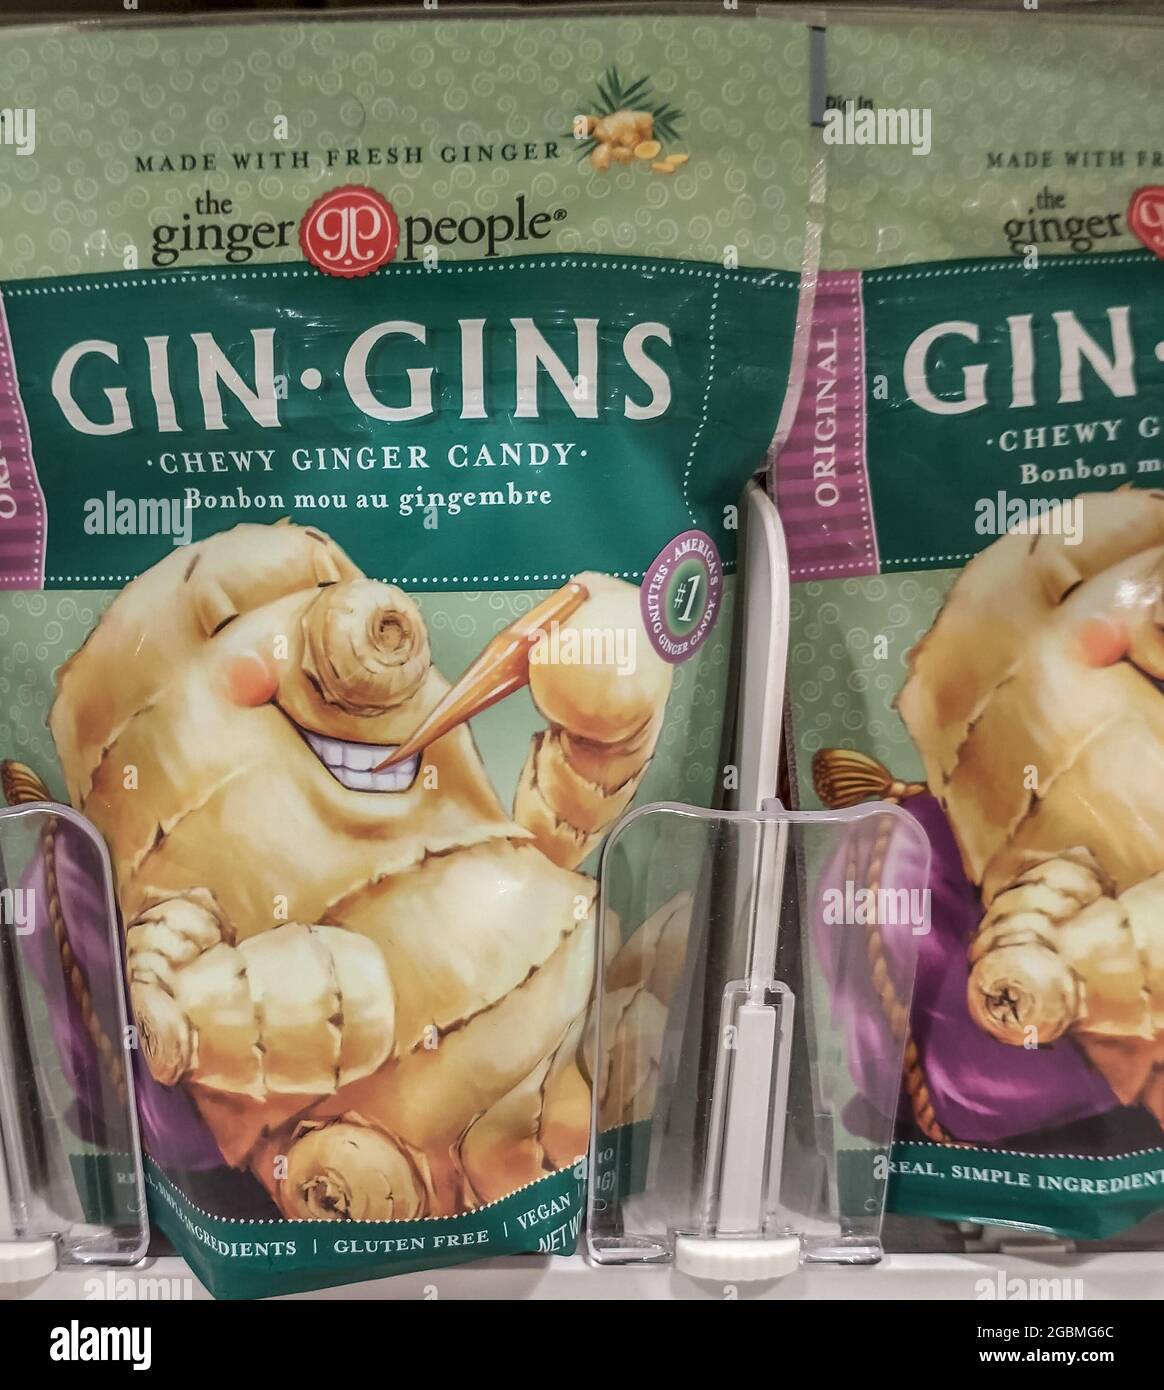 Gin-gins Ginger Candy en un mercado editorial ilustrativo Foto de stock